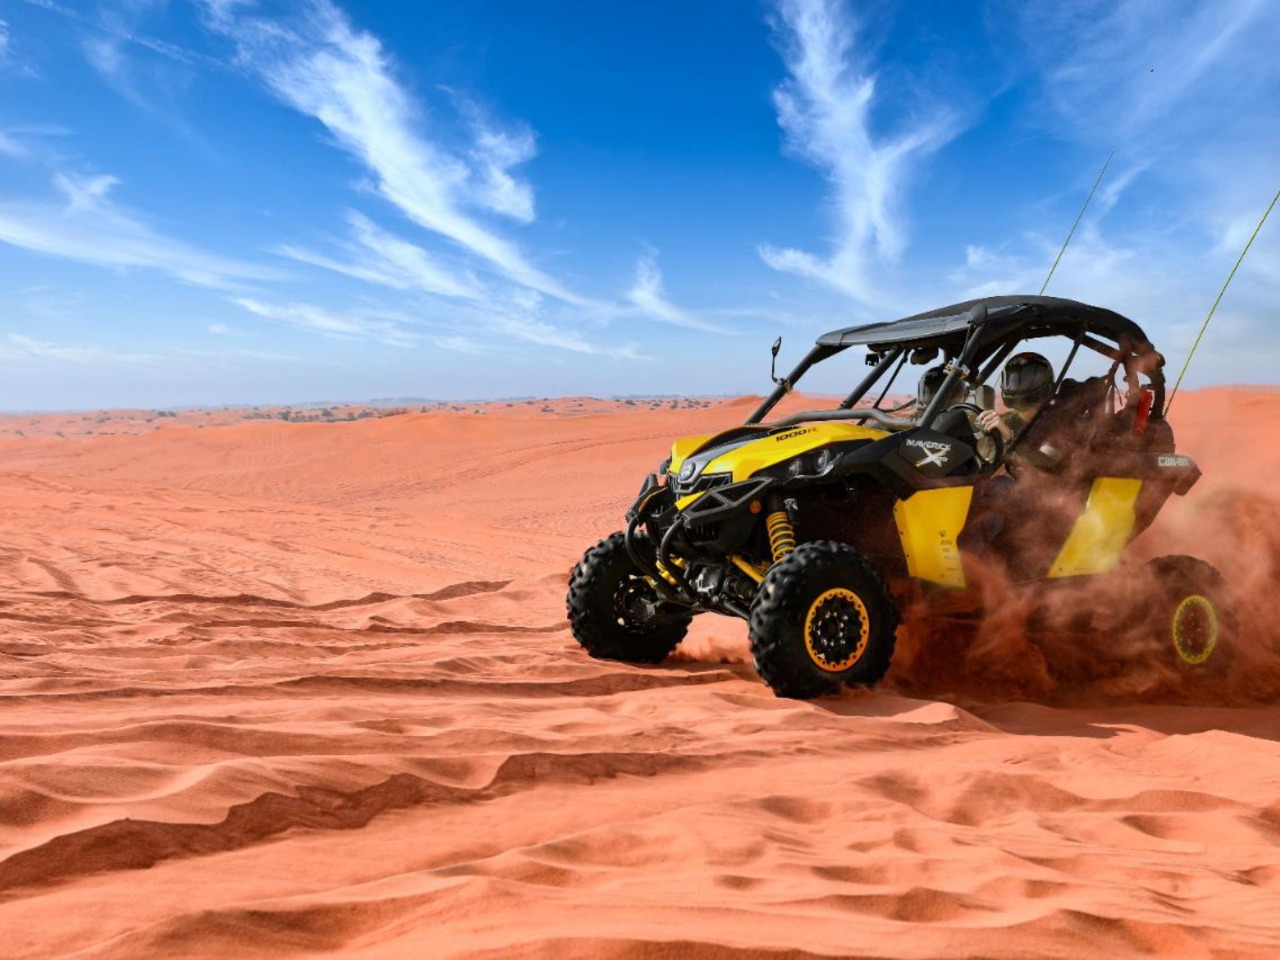 Джип-сафари и катание на багги в пустыне | Цена 239$, отзывы, описание экскурсии